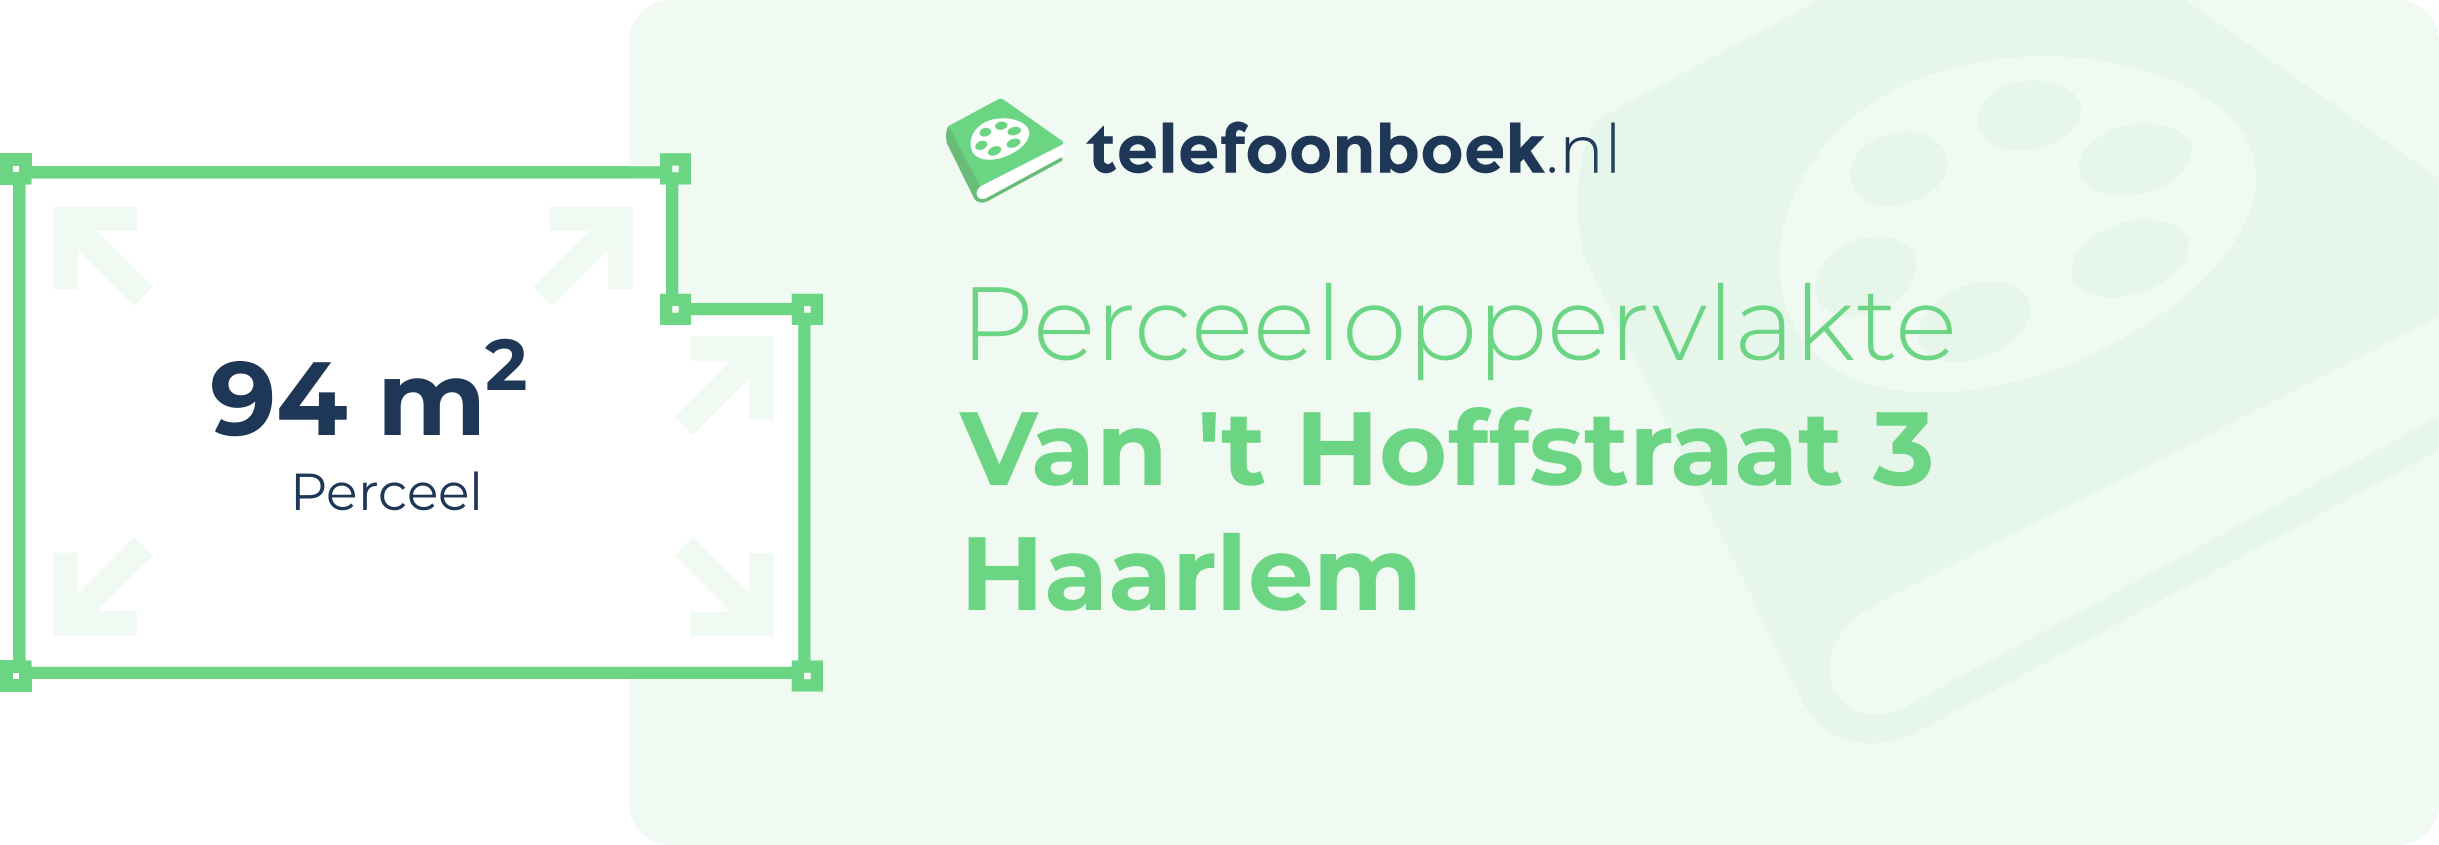 Perceeloppervlakte Van 't Hoffstraat 3 Haarlem